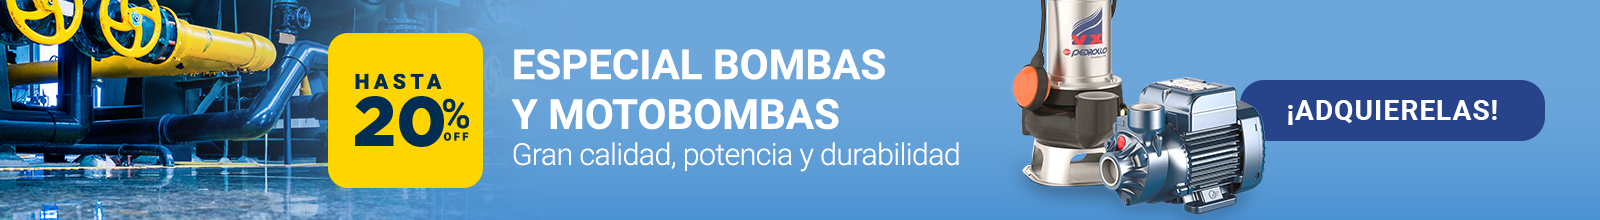 Bombas y Motobombas Hasta un 20% OFF